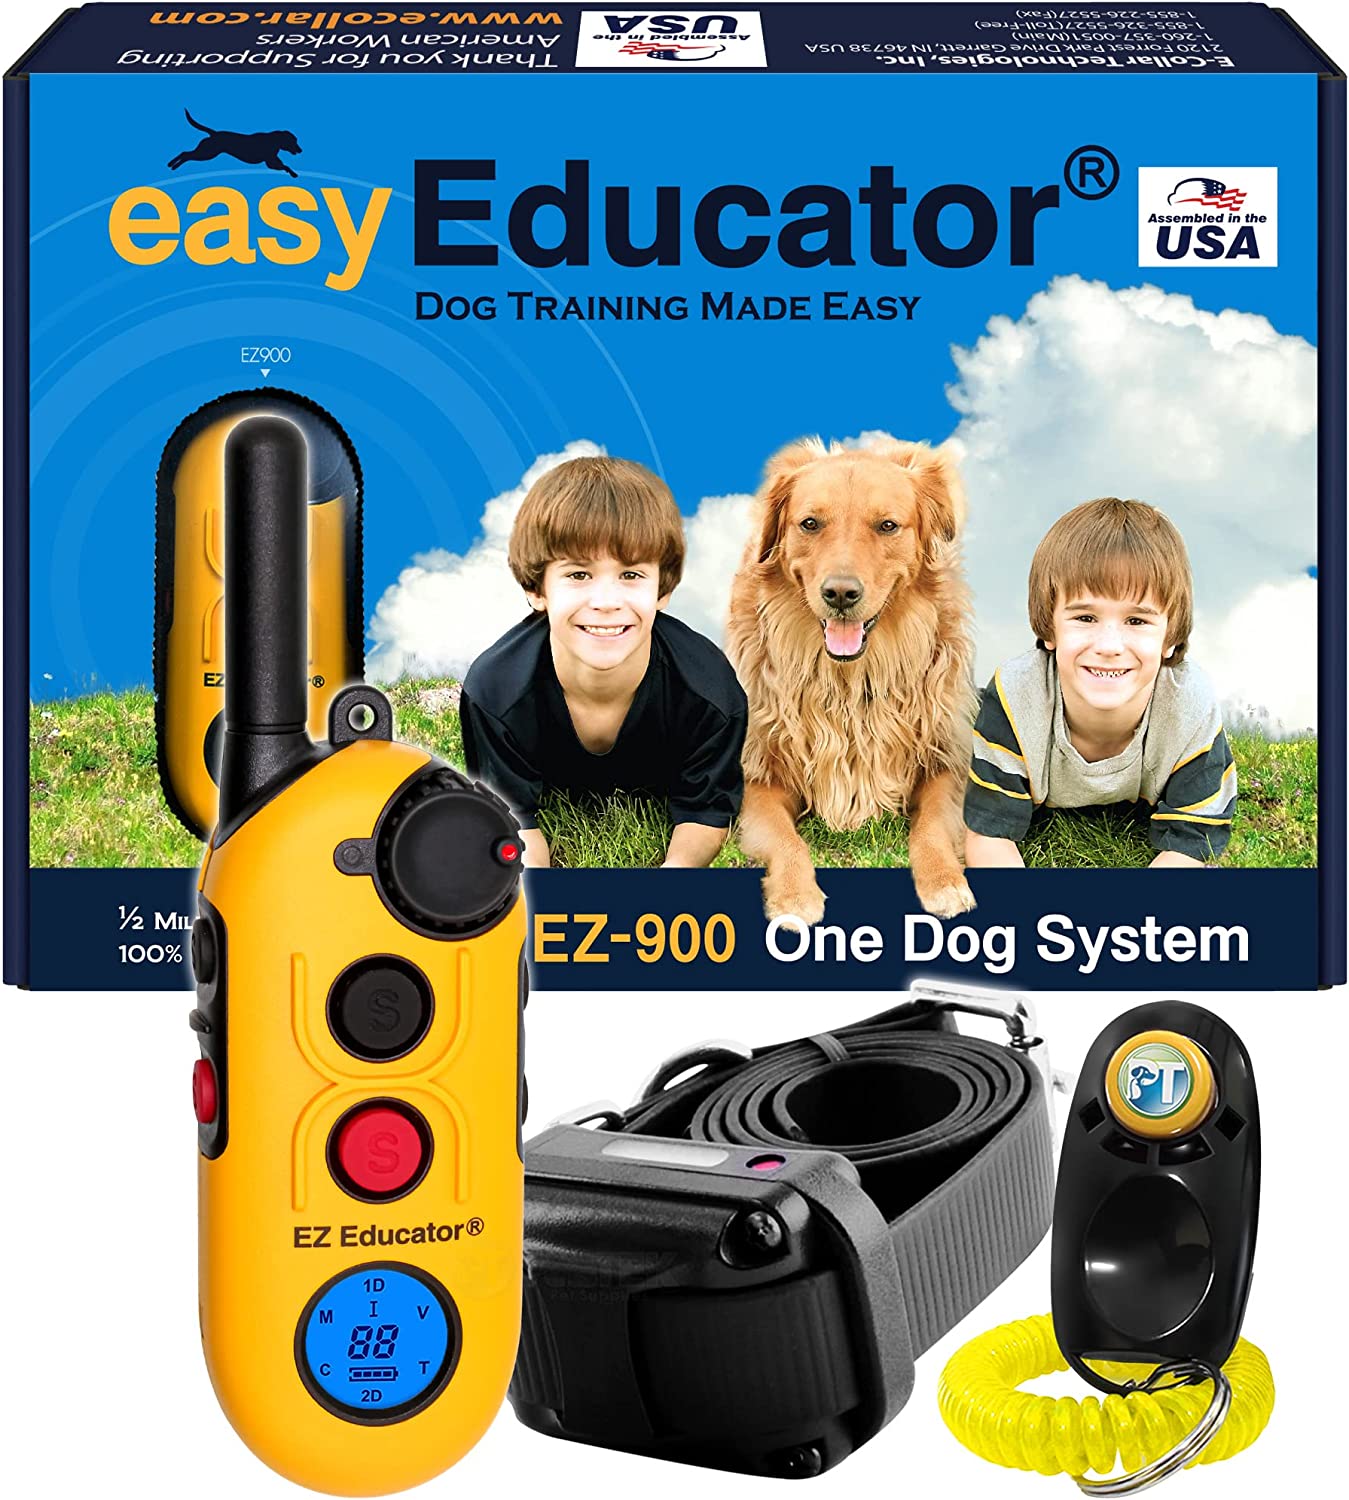 قلاده الکترونیکی سگ برند asy-Educator  کد G900  یک قلاده استاتیک، لرزان و تحریک صدا با کیت آموزشی کلیکر آموزش سگ